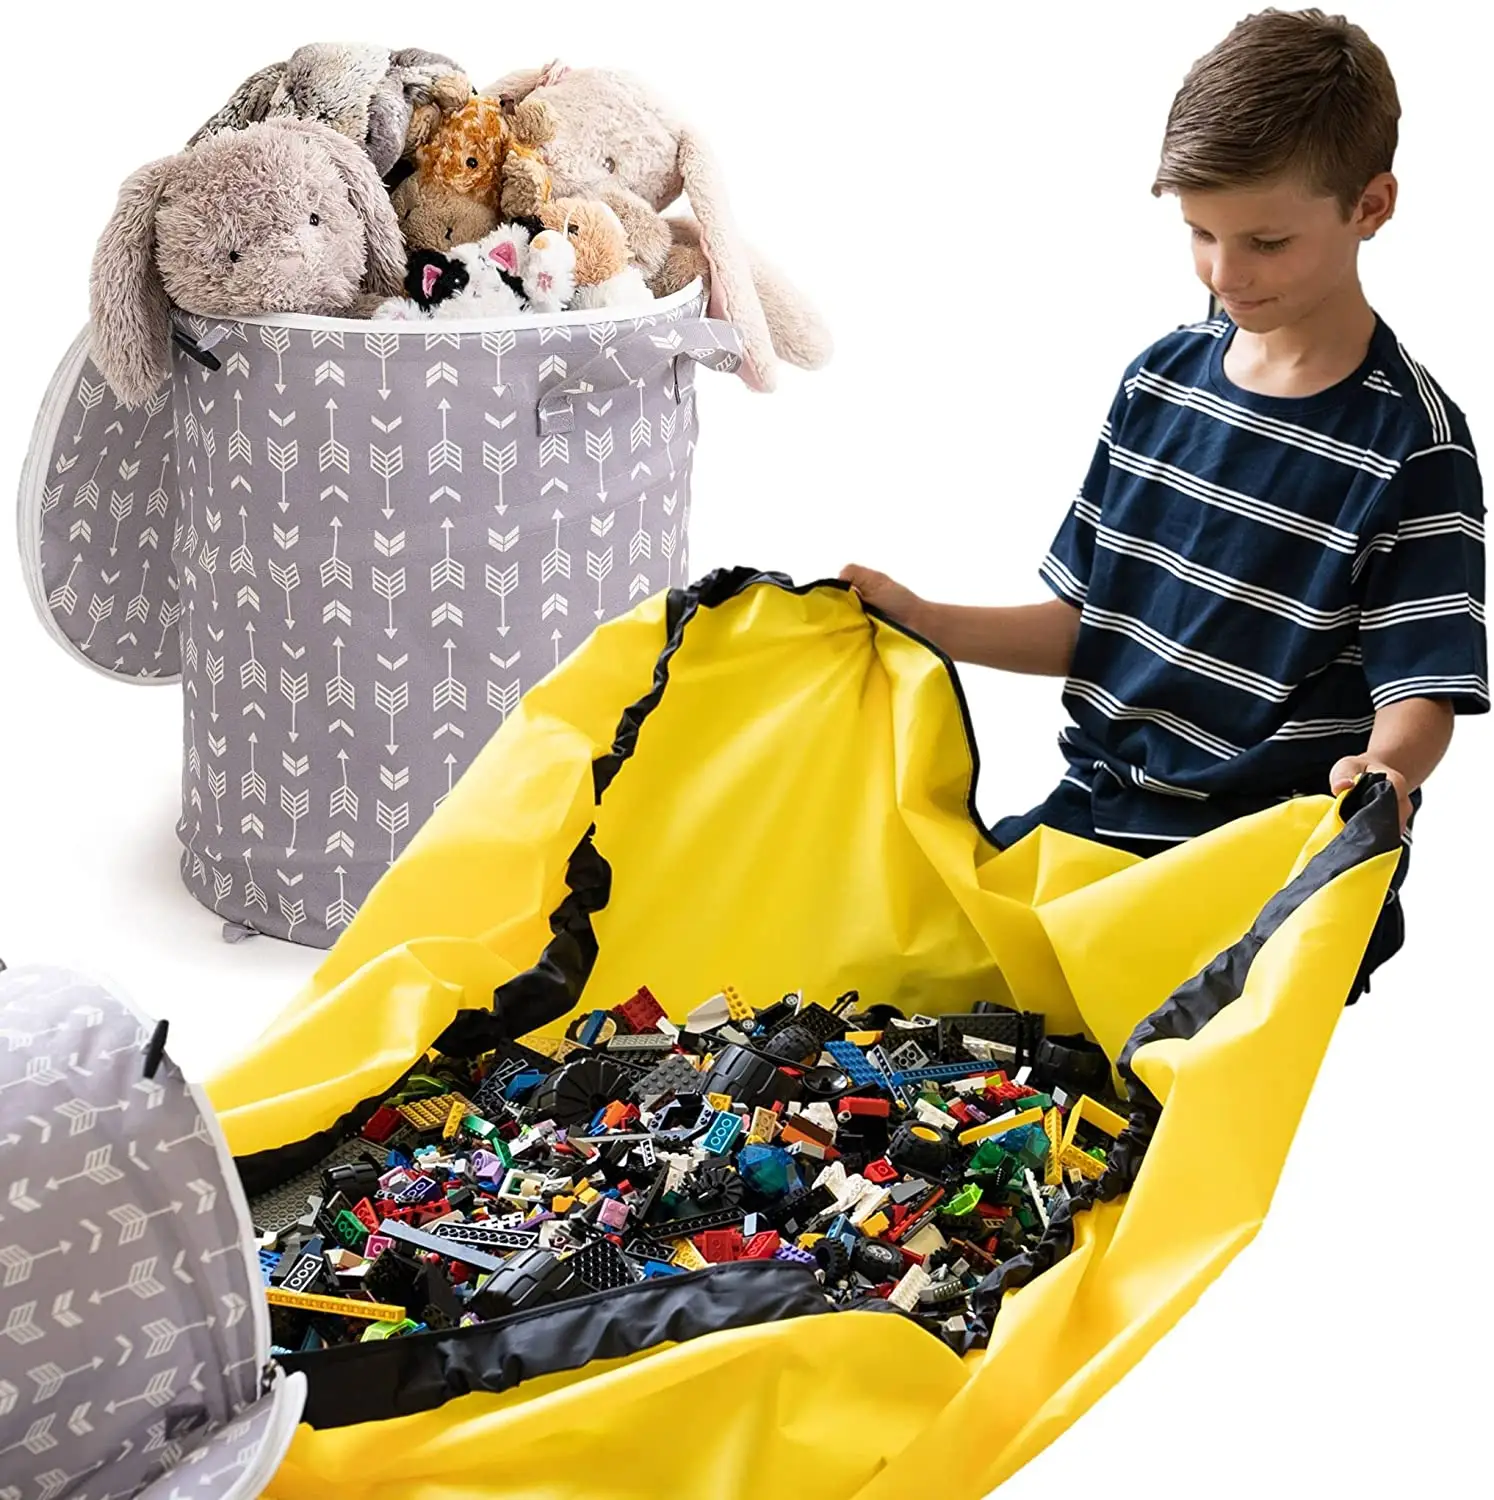 Spielzeug Aufbewahrung tasche mit Spiel matte Schnelle Kordel zug für Kinder Spielzeug Aufbewahrung Organizer Körbe für die Aufbewahrung im Klassen zimmer